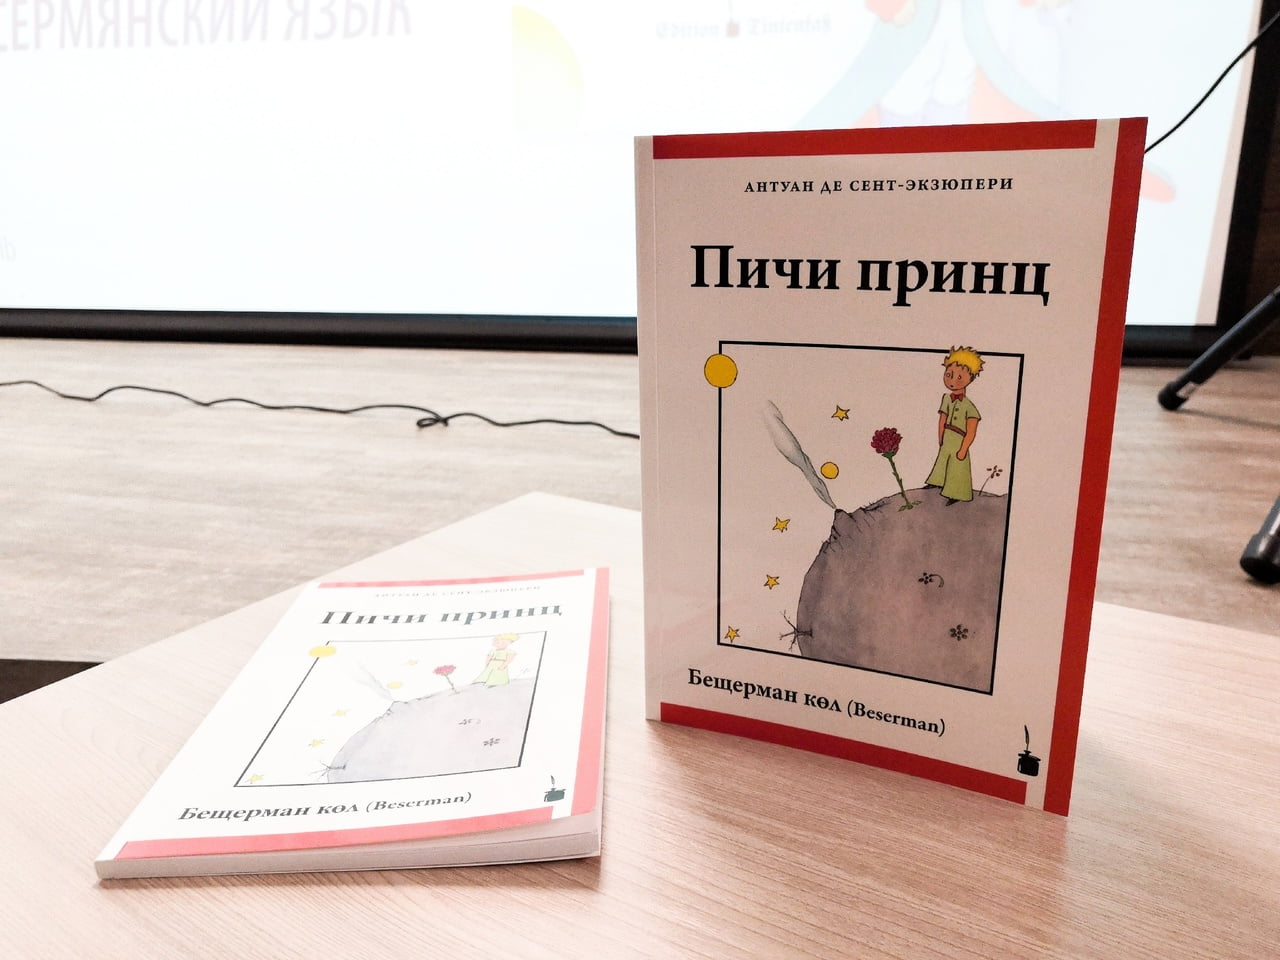 В ижевске состоялась презентация книги «маленький принц» на бесермянском языке 19